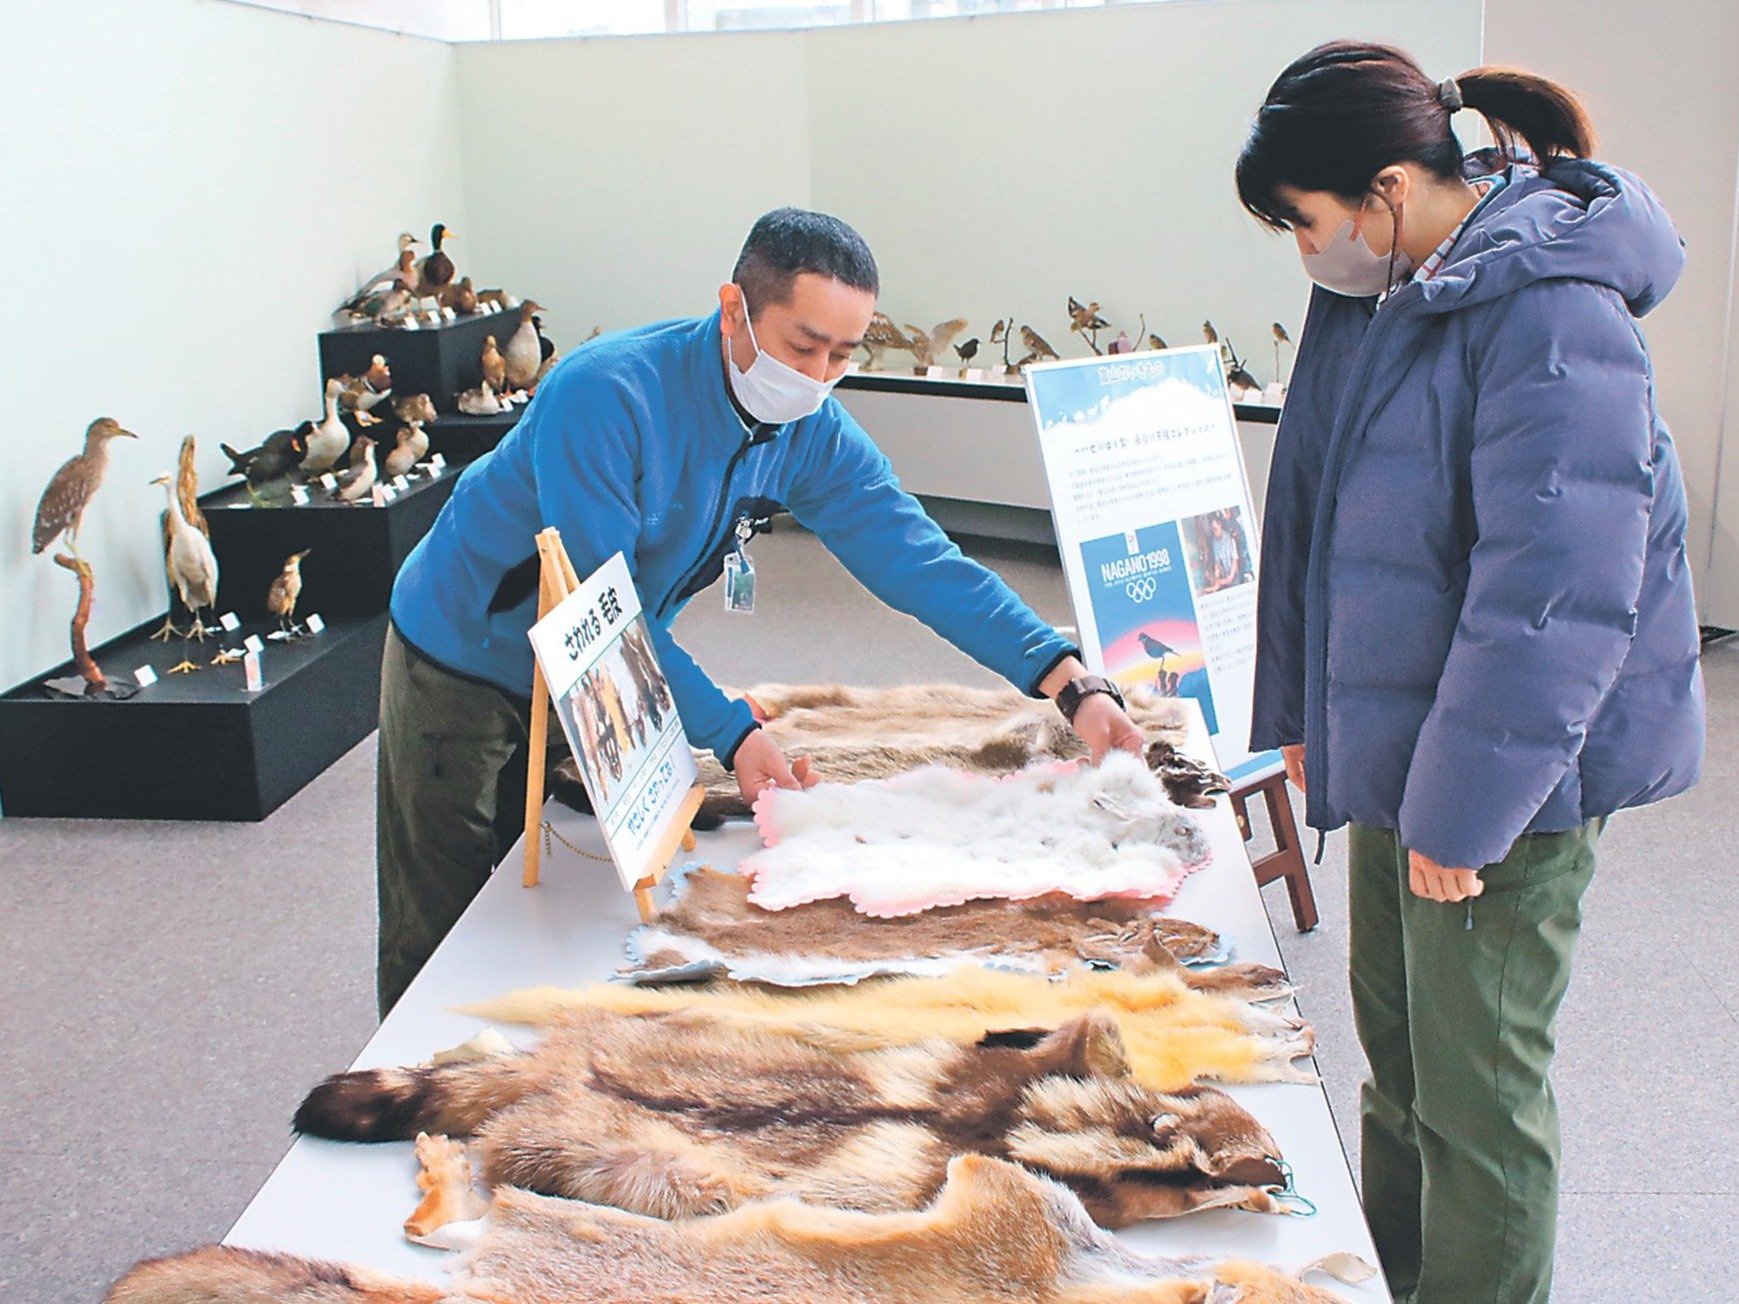 富山の野鳥、剥製で紹介 立山砂防博物館で展示、剥製師の長谷川さん